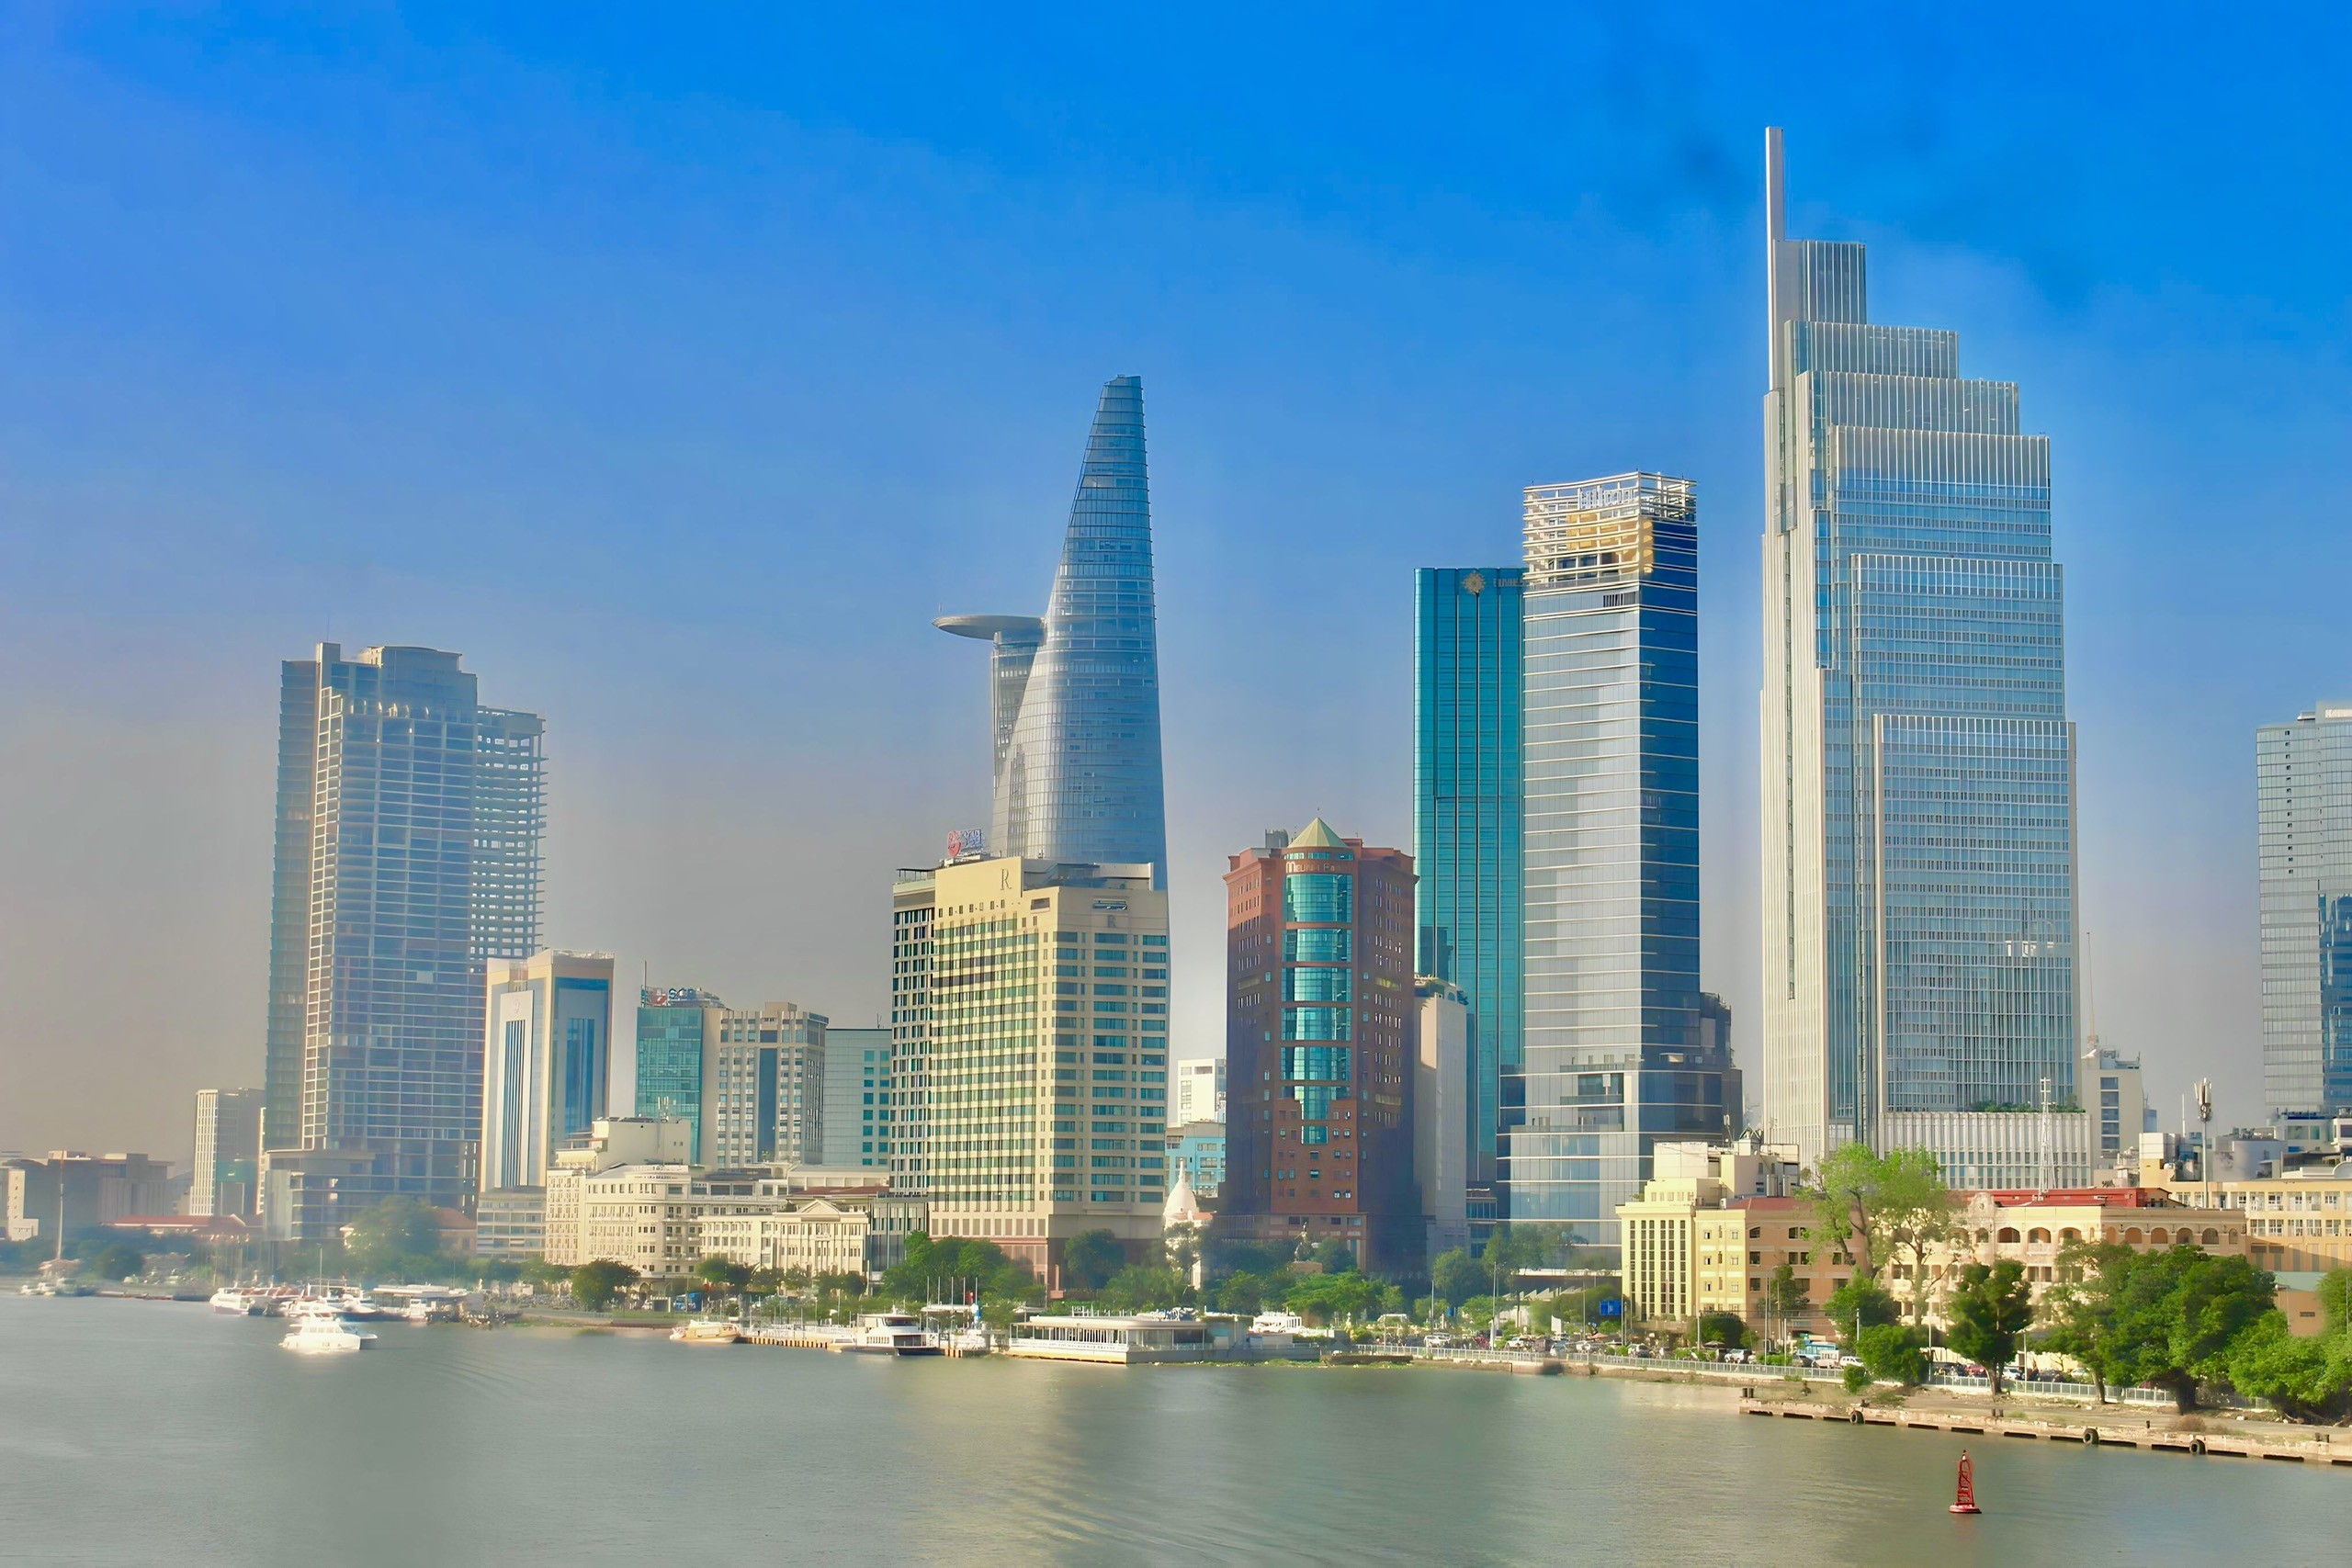 Phát động Giải thưởng “Báo chí viết về Du lịch TP Hồ Chí Minh” năm 2023